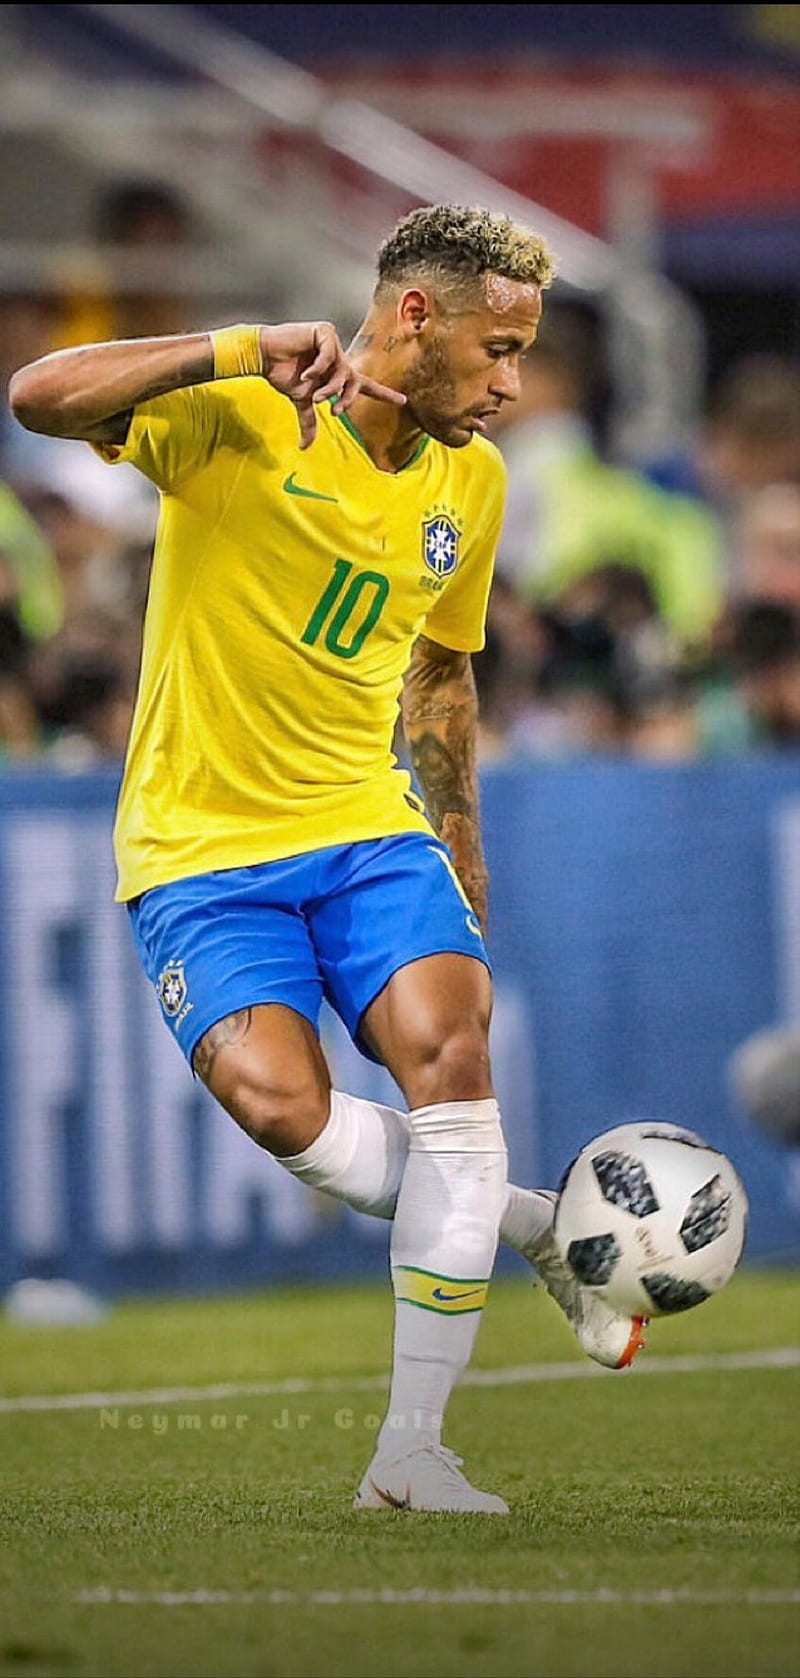 Tổng hợp 888 Wallpaper pc Neymar Chất lượng cao, tải miễn phí